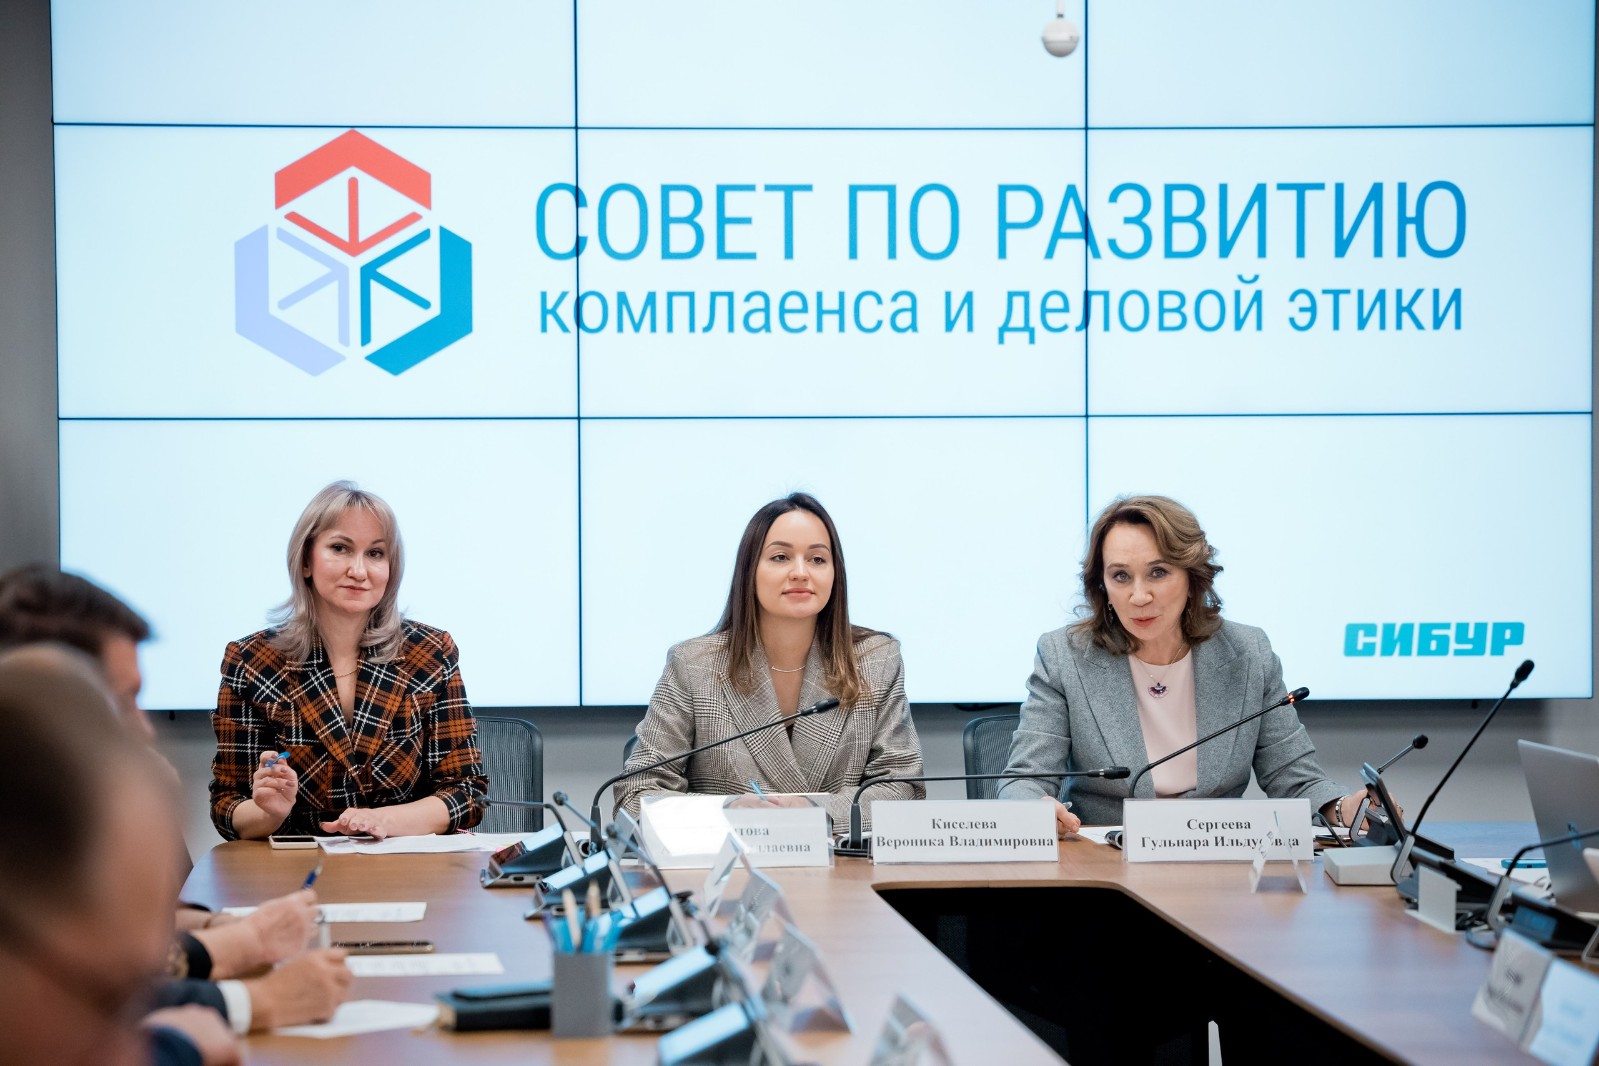 10 октября прошло очередное заседание Совета по развитию комплаенса и деловой этики в Республике Татарстан ,комплаенс, Чепарина, противодействие коррупции